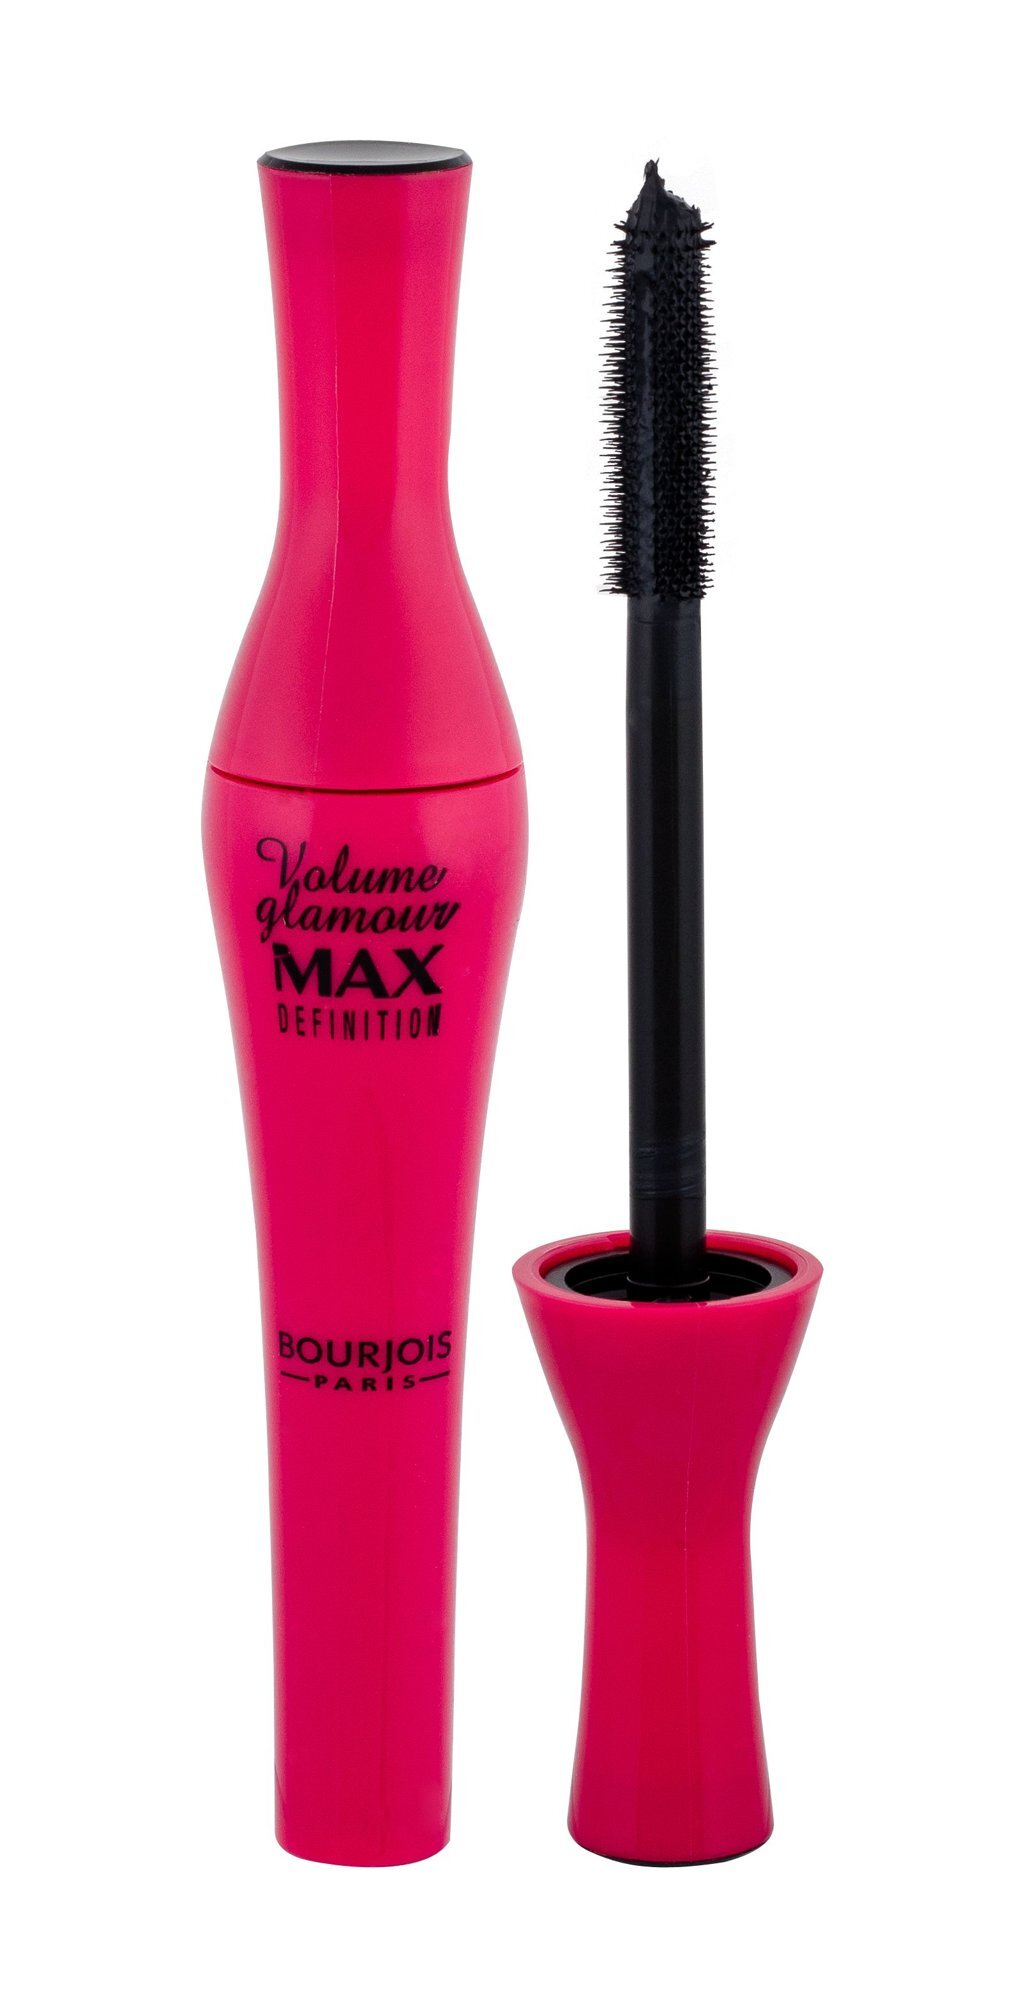 Blakstienų tušas Bourjois Volume Glamour Max Definition